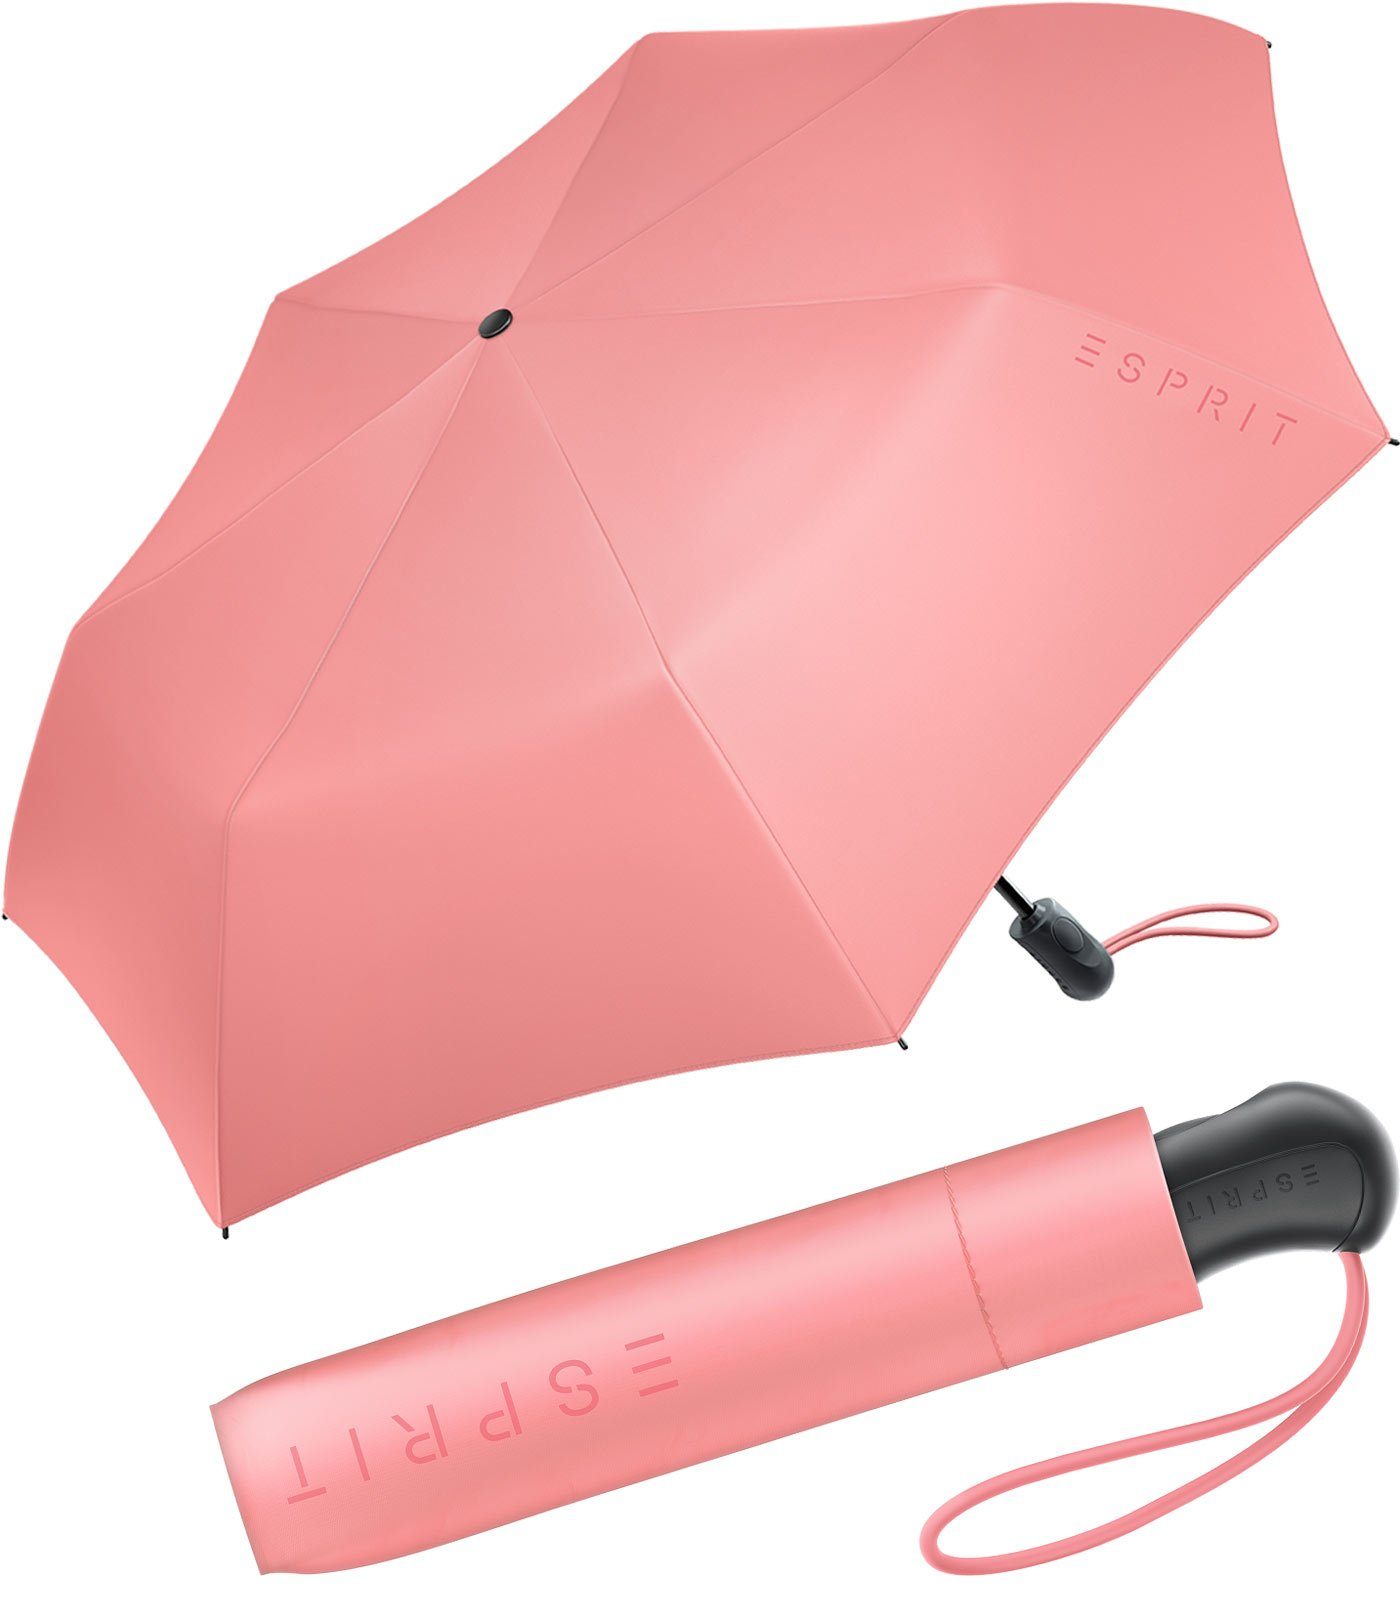 Esprit Taschenregenschirm Damen Easymatic Light Auf-Zu Automatik FJ 2022, stabil und praktisch, in den neuen Trendfarben koralle